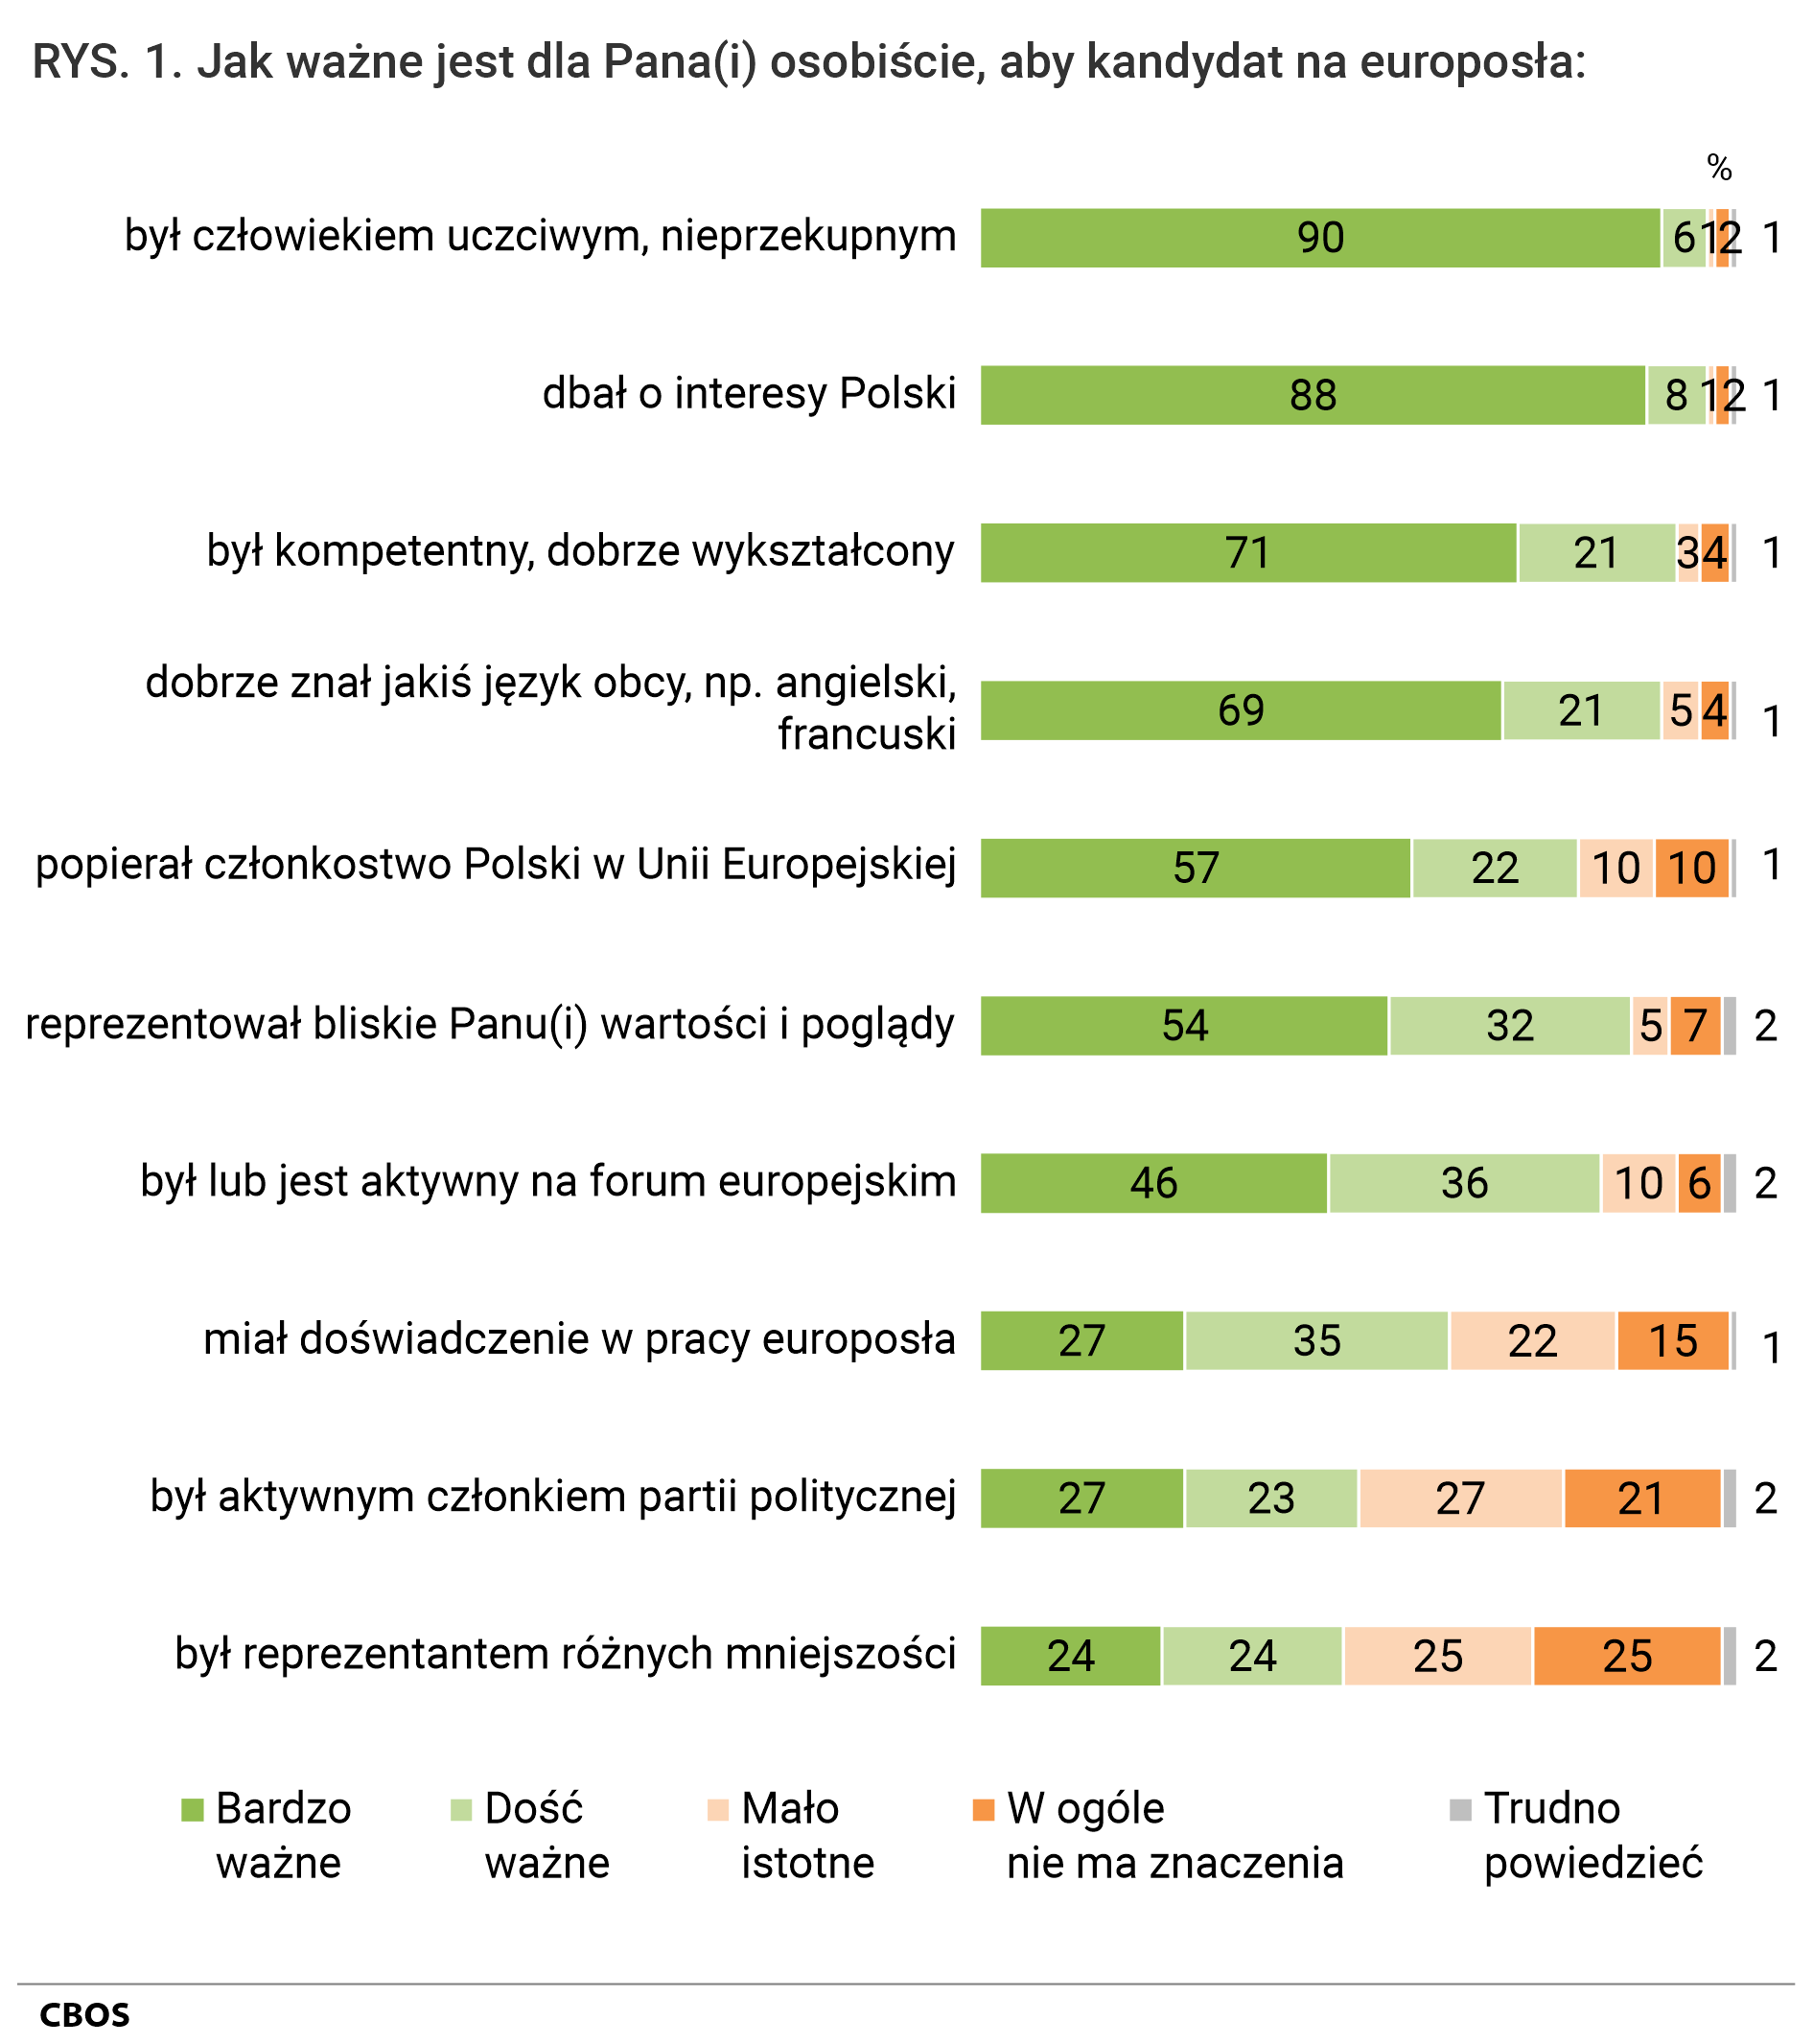 Rysunek 1. Jak ważne jest dla Pana (Pani) osobiście, aby kandydat na europosła: był człowiekiem uczciwym, nieprzekupnym: Bardzo ważne 90%, Dość ważne 6%, Mało istotne 1%, W ogóle nie ma znaczenia 2%, Trudno powiedzieć 1%;  dbał o interesy Polski: Bardzo ważne 88%, Dość ważne 8%, Mało istotne 1%, W ogóle nie ma znaczenia 2%, Trudno powiedzieć 1%;  był kompetentny, dobrze wykształcony: Bardzo ważne 71%, Dość ważne 21%, Mało istotne 3%, W ogóle nie ma znaczenia 4%, Trudno powiedzieć 1%;  dobrze znał jakiś język obcy, np. angielski, francuski: Bardzo ważne 69%, Dość ważne 21%, Mało istotne 5%, W ogóle nie ma znaczenia 4%, Trudno powiedzieć 1%;  popierał członkostwo Polski w Unii Europejskiej: Bardzo ważne 57%, Dość ważne 22%, Mało istotne 10%, W ogóle nie ma znaczenia 10%, Trudno powiedzieć 1%;  reprezentował bliskie Panu (Pani) wartości i poglądy: Bardzo ważne 54%, Dość ważne 32%, Mało istotne 5%, W ogóle nie ma znaczenia 7%, Trudno powiedzieć 2%;  był lub jest aktywny na forum europejskim: Bardzo ważne 46%, Dość ważne 36%, Mało istotne 10%, W ogóle nie ma znaczenia 6%, Trudno powiedzieć 2%;  miał doświadczenie w pracy europosła: Bardzo ważne 27%, Dość ważne 35%, Mało istotne 22%, W ogóle nie ma znaczenia 15%, Trudno powiedzieć 1%;  był aktywnym członkiem partii politycznej: Bardzo ważne 27%, Dość ważne 23%, Mało istotne 27%, W ogóle nie ma znaczenia 21%, Trudno powiedzieć 2%;  był reprezentantem różnych mniejszości: Bardzo ważne 24%, Dość ważne 24%, Mało istotne 25%, W ogóle nie ma znaczenia 25%, Trudno powiedzieć 2%